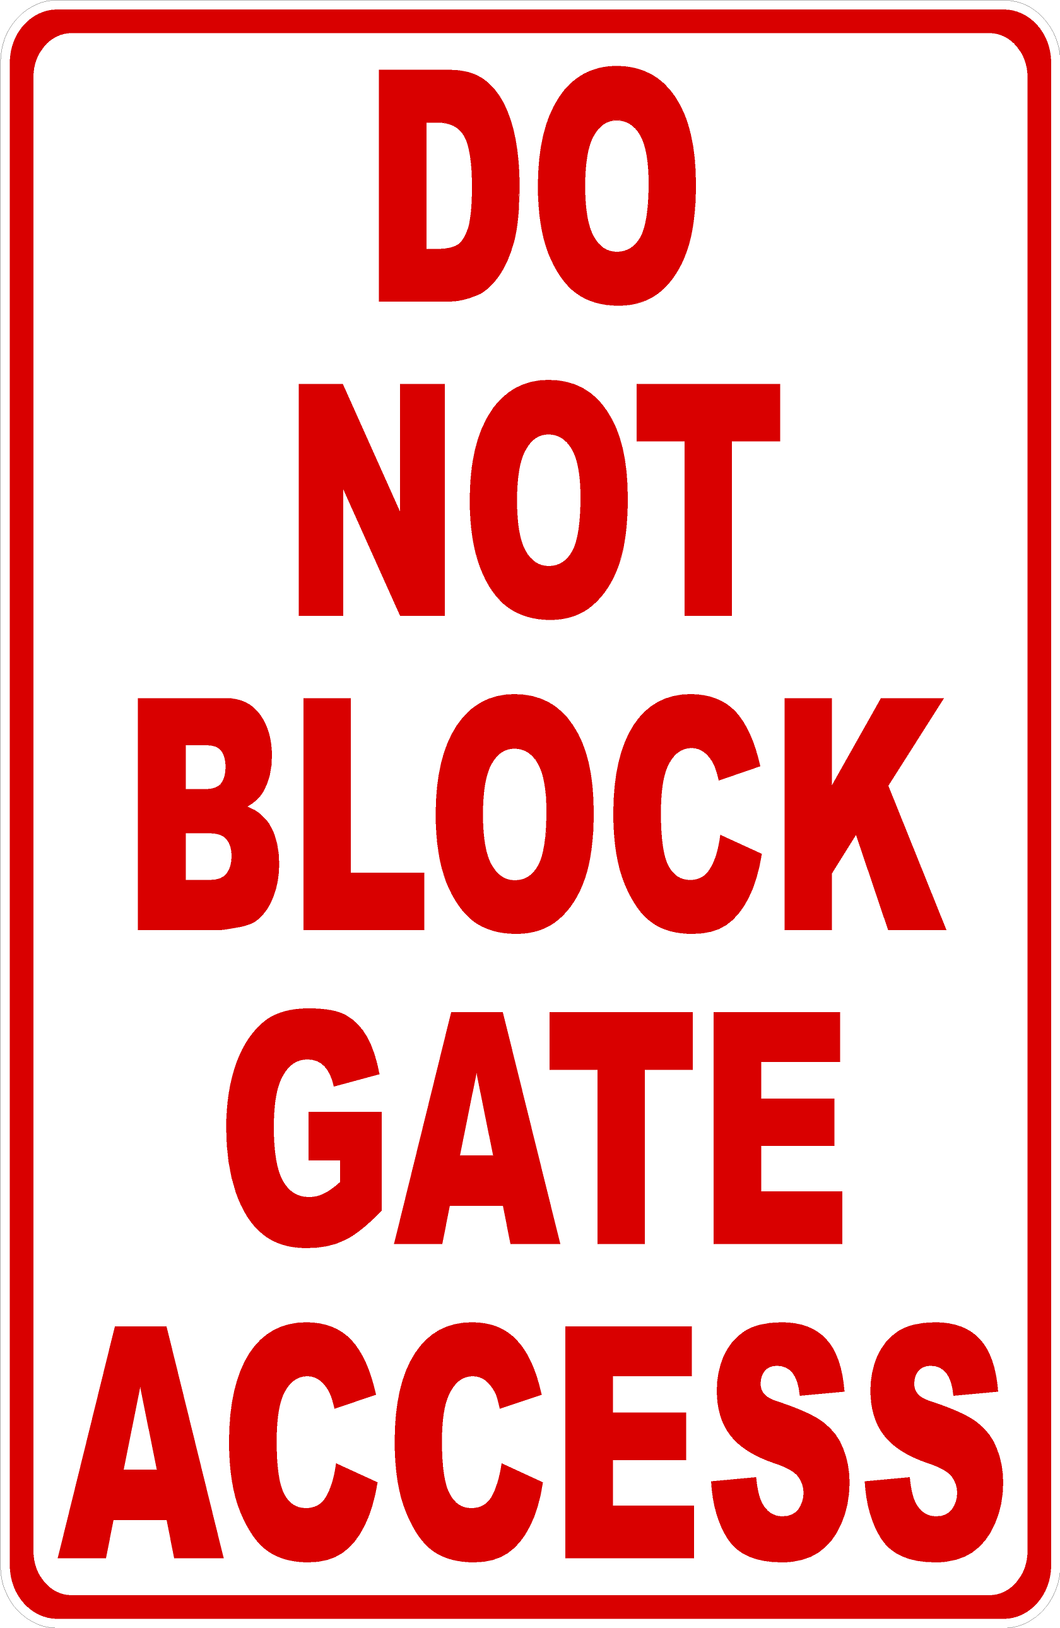 Do Not Block Gate Access Sign